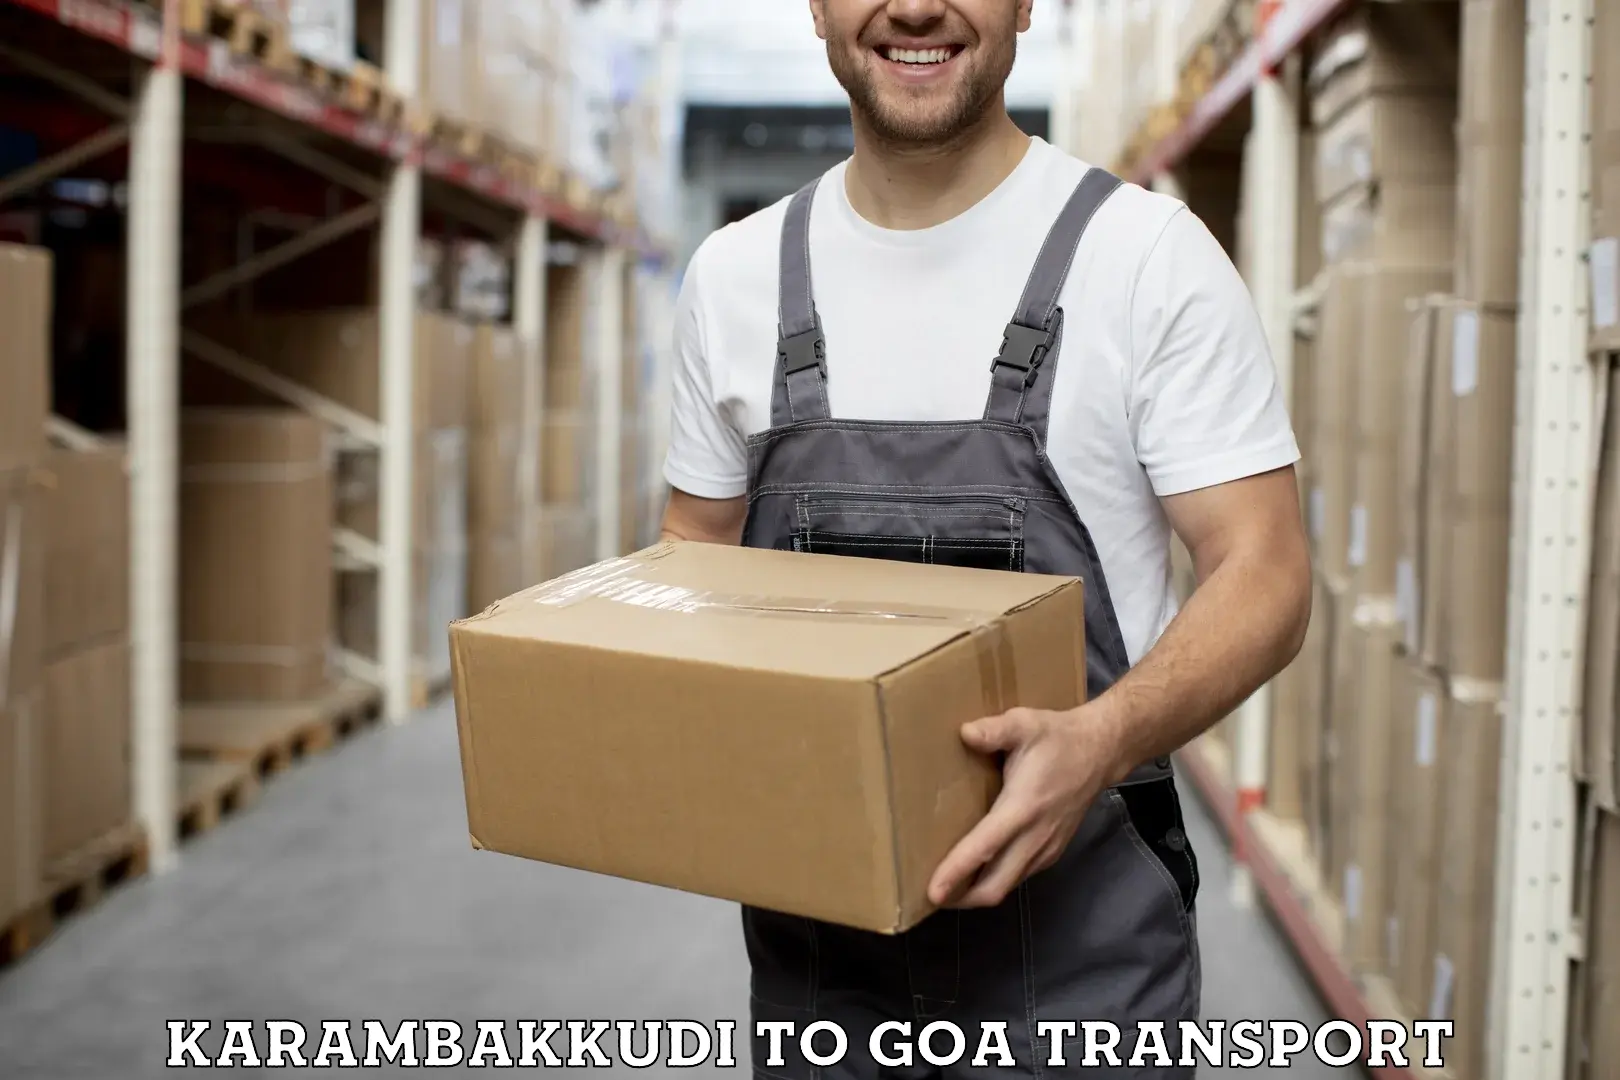 Online transport booking Karambakkudi to Panaji